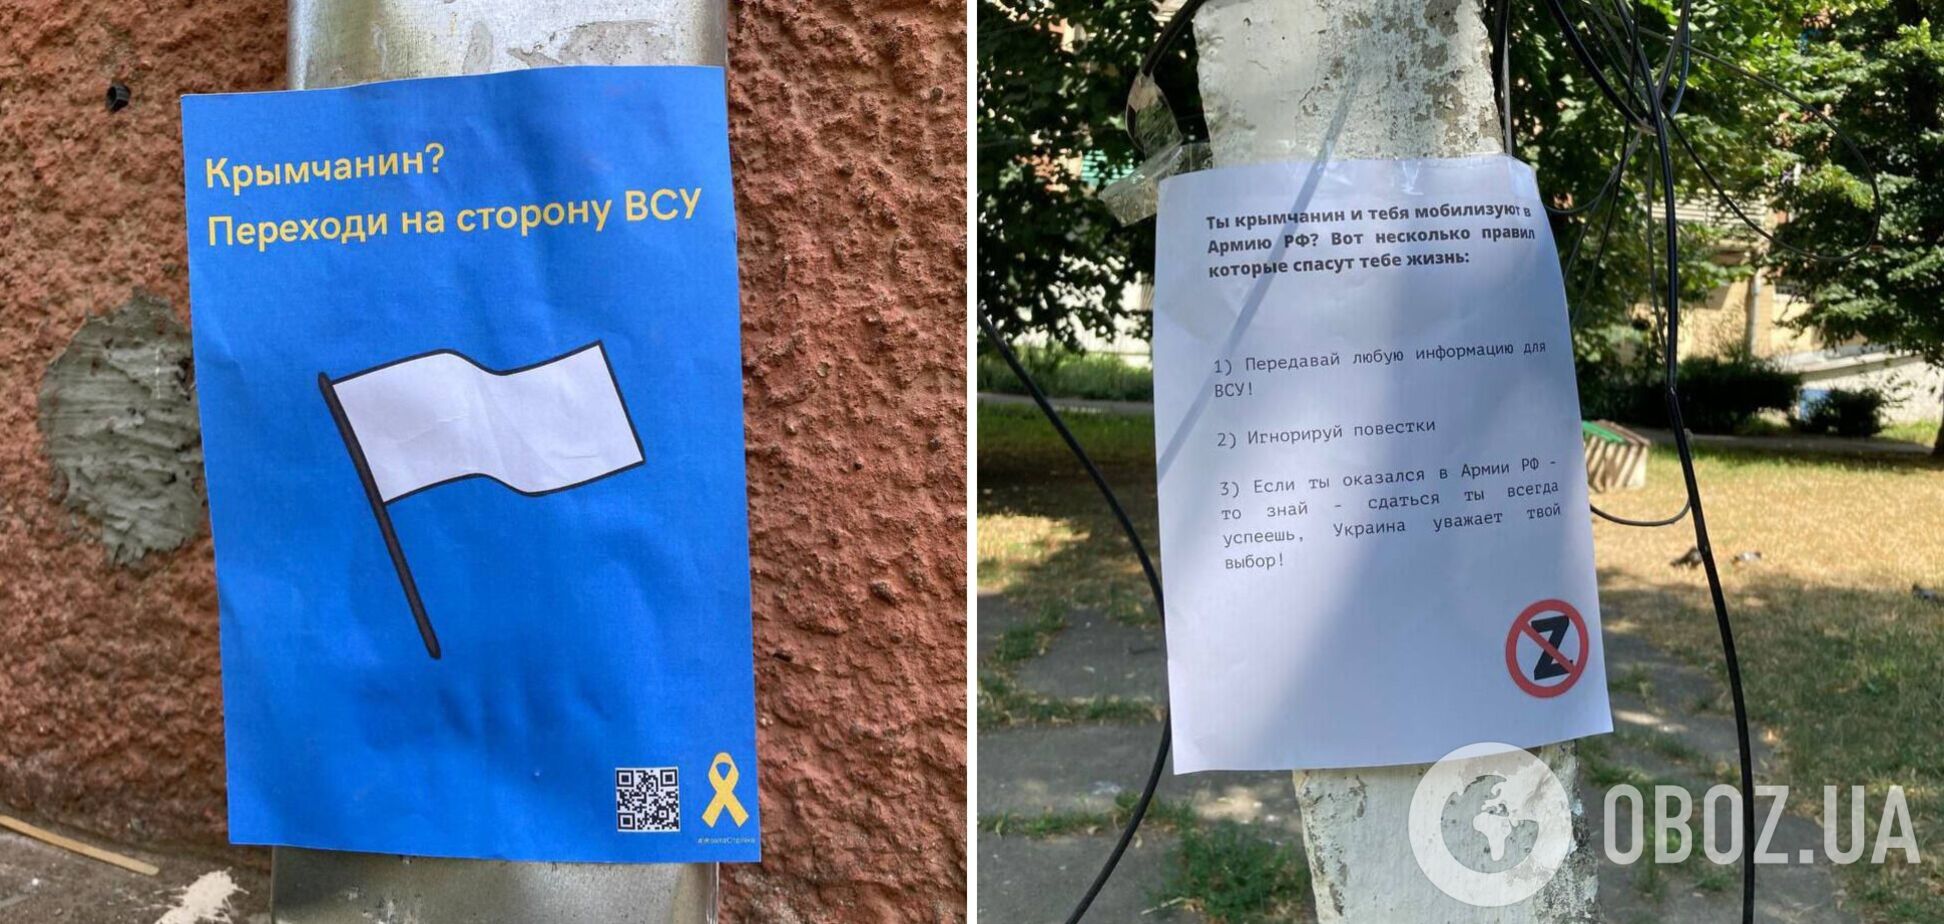 Переходите на сторону ВСУ: в оккупированном Крыму партизаны расклеили листовки против мобилизации. Фото